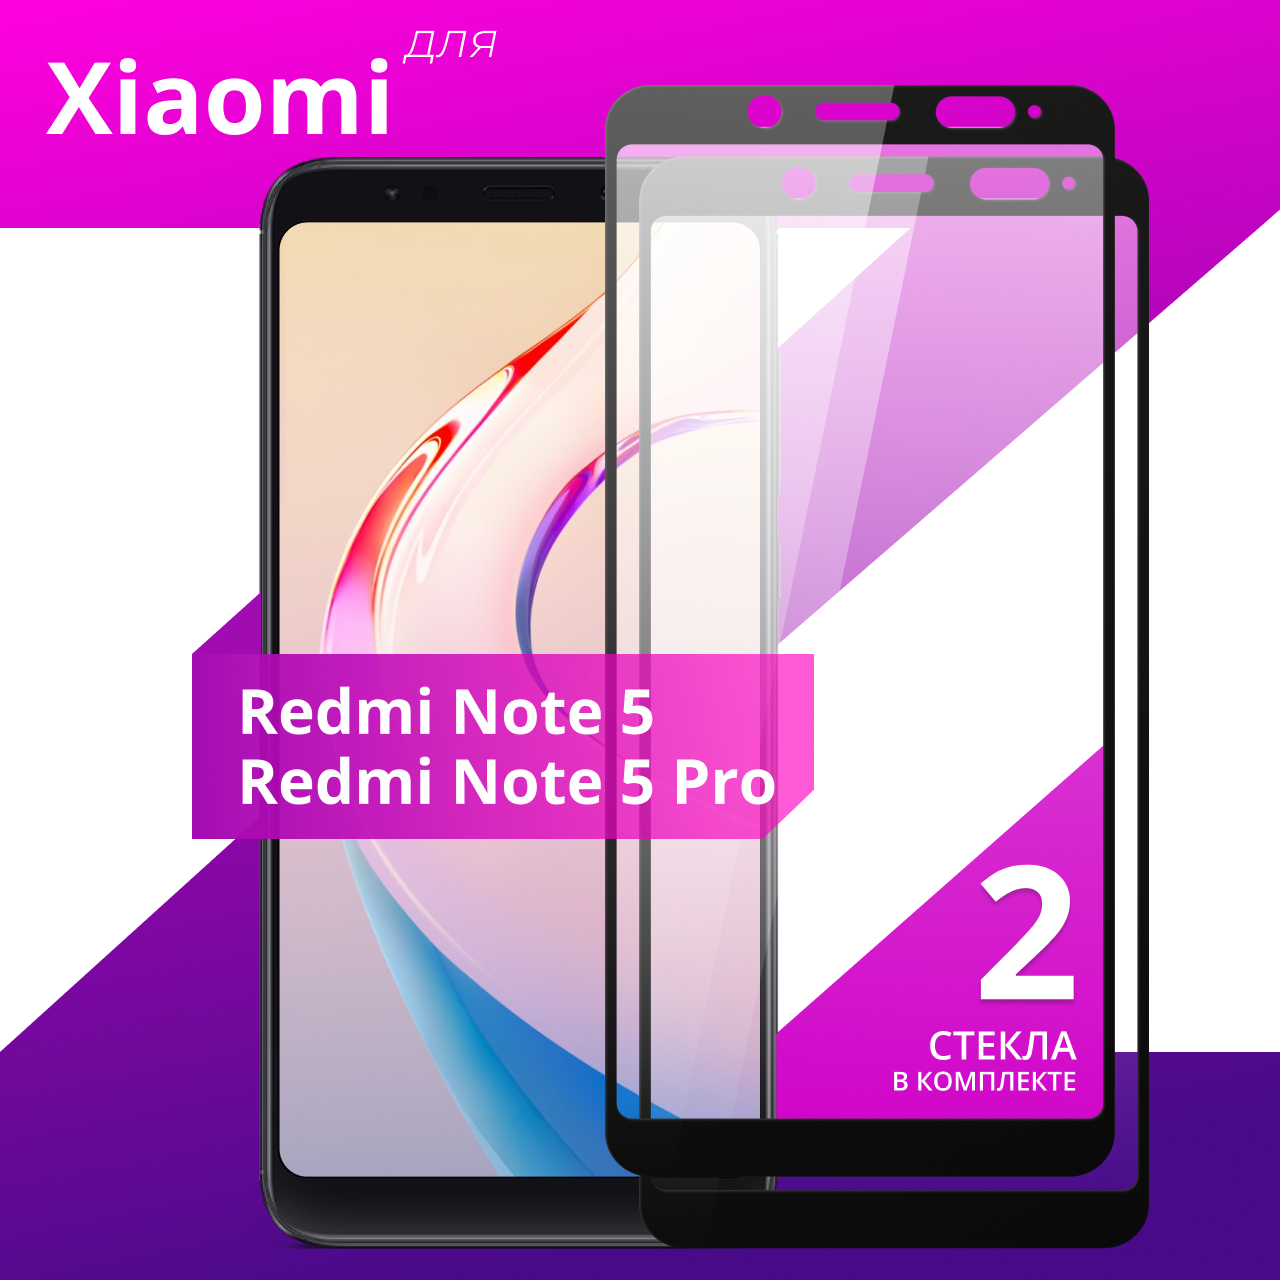 Комплект 2 шт. Защитное противоударное стекло для телефона Xiaomi Redmi Note 5 и Redmi Note 5 Pro / Глянцевое стекло с олеофобным покрытием на смартфон Сяоми Редми Нот 5 и Редми Нот 5 Про